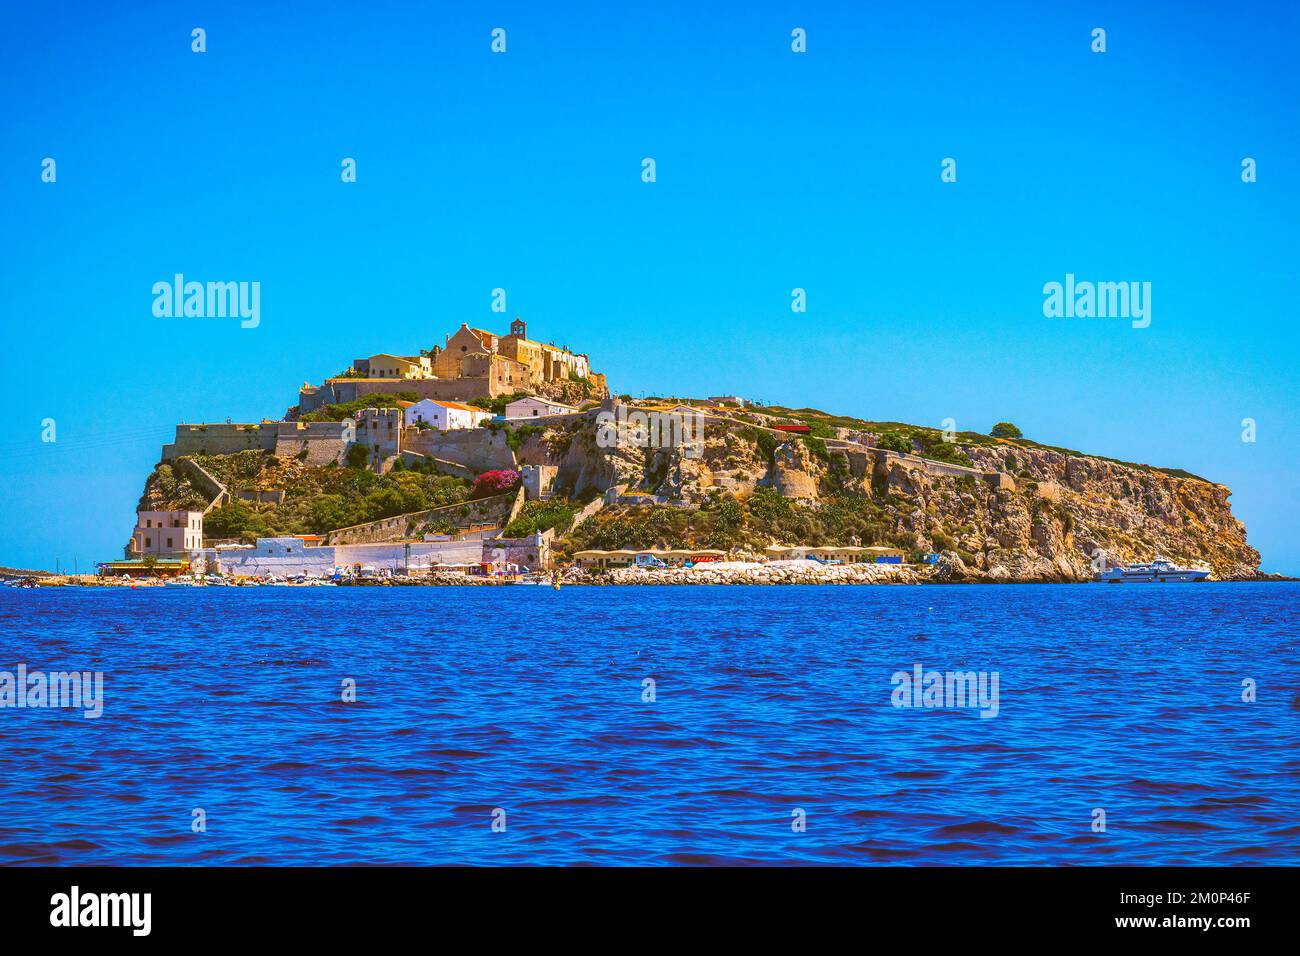 Isole Tremiti isola di San Nicola in Gargano Puglia - Italia Foto Stock